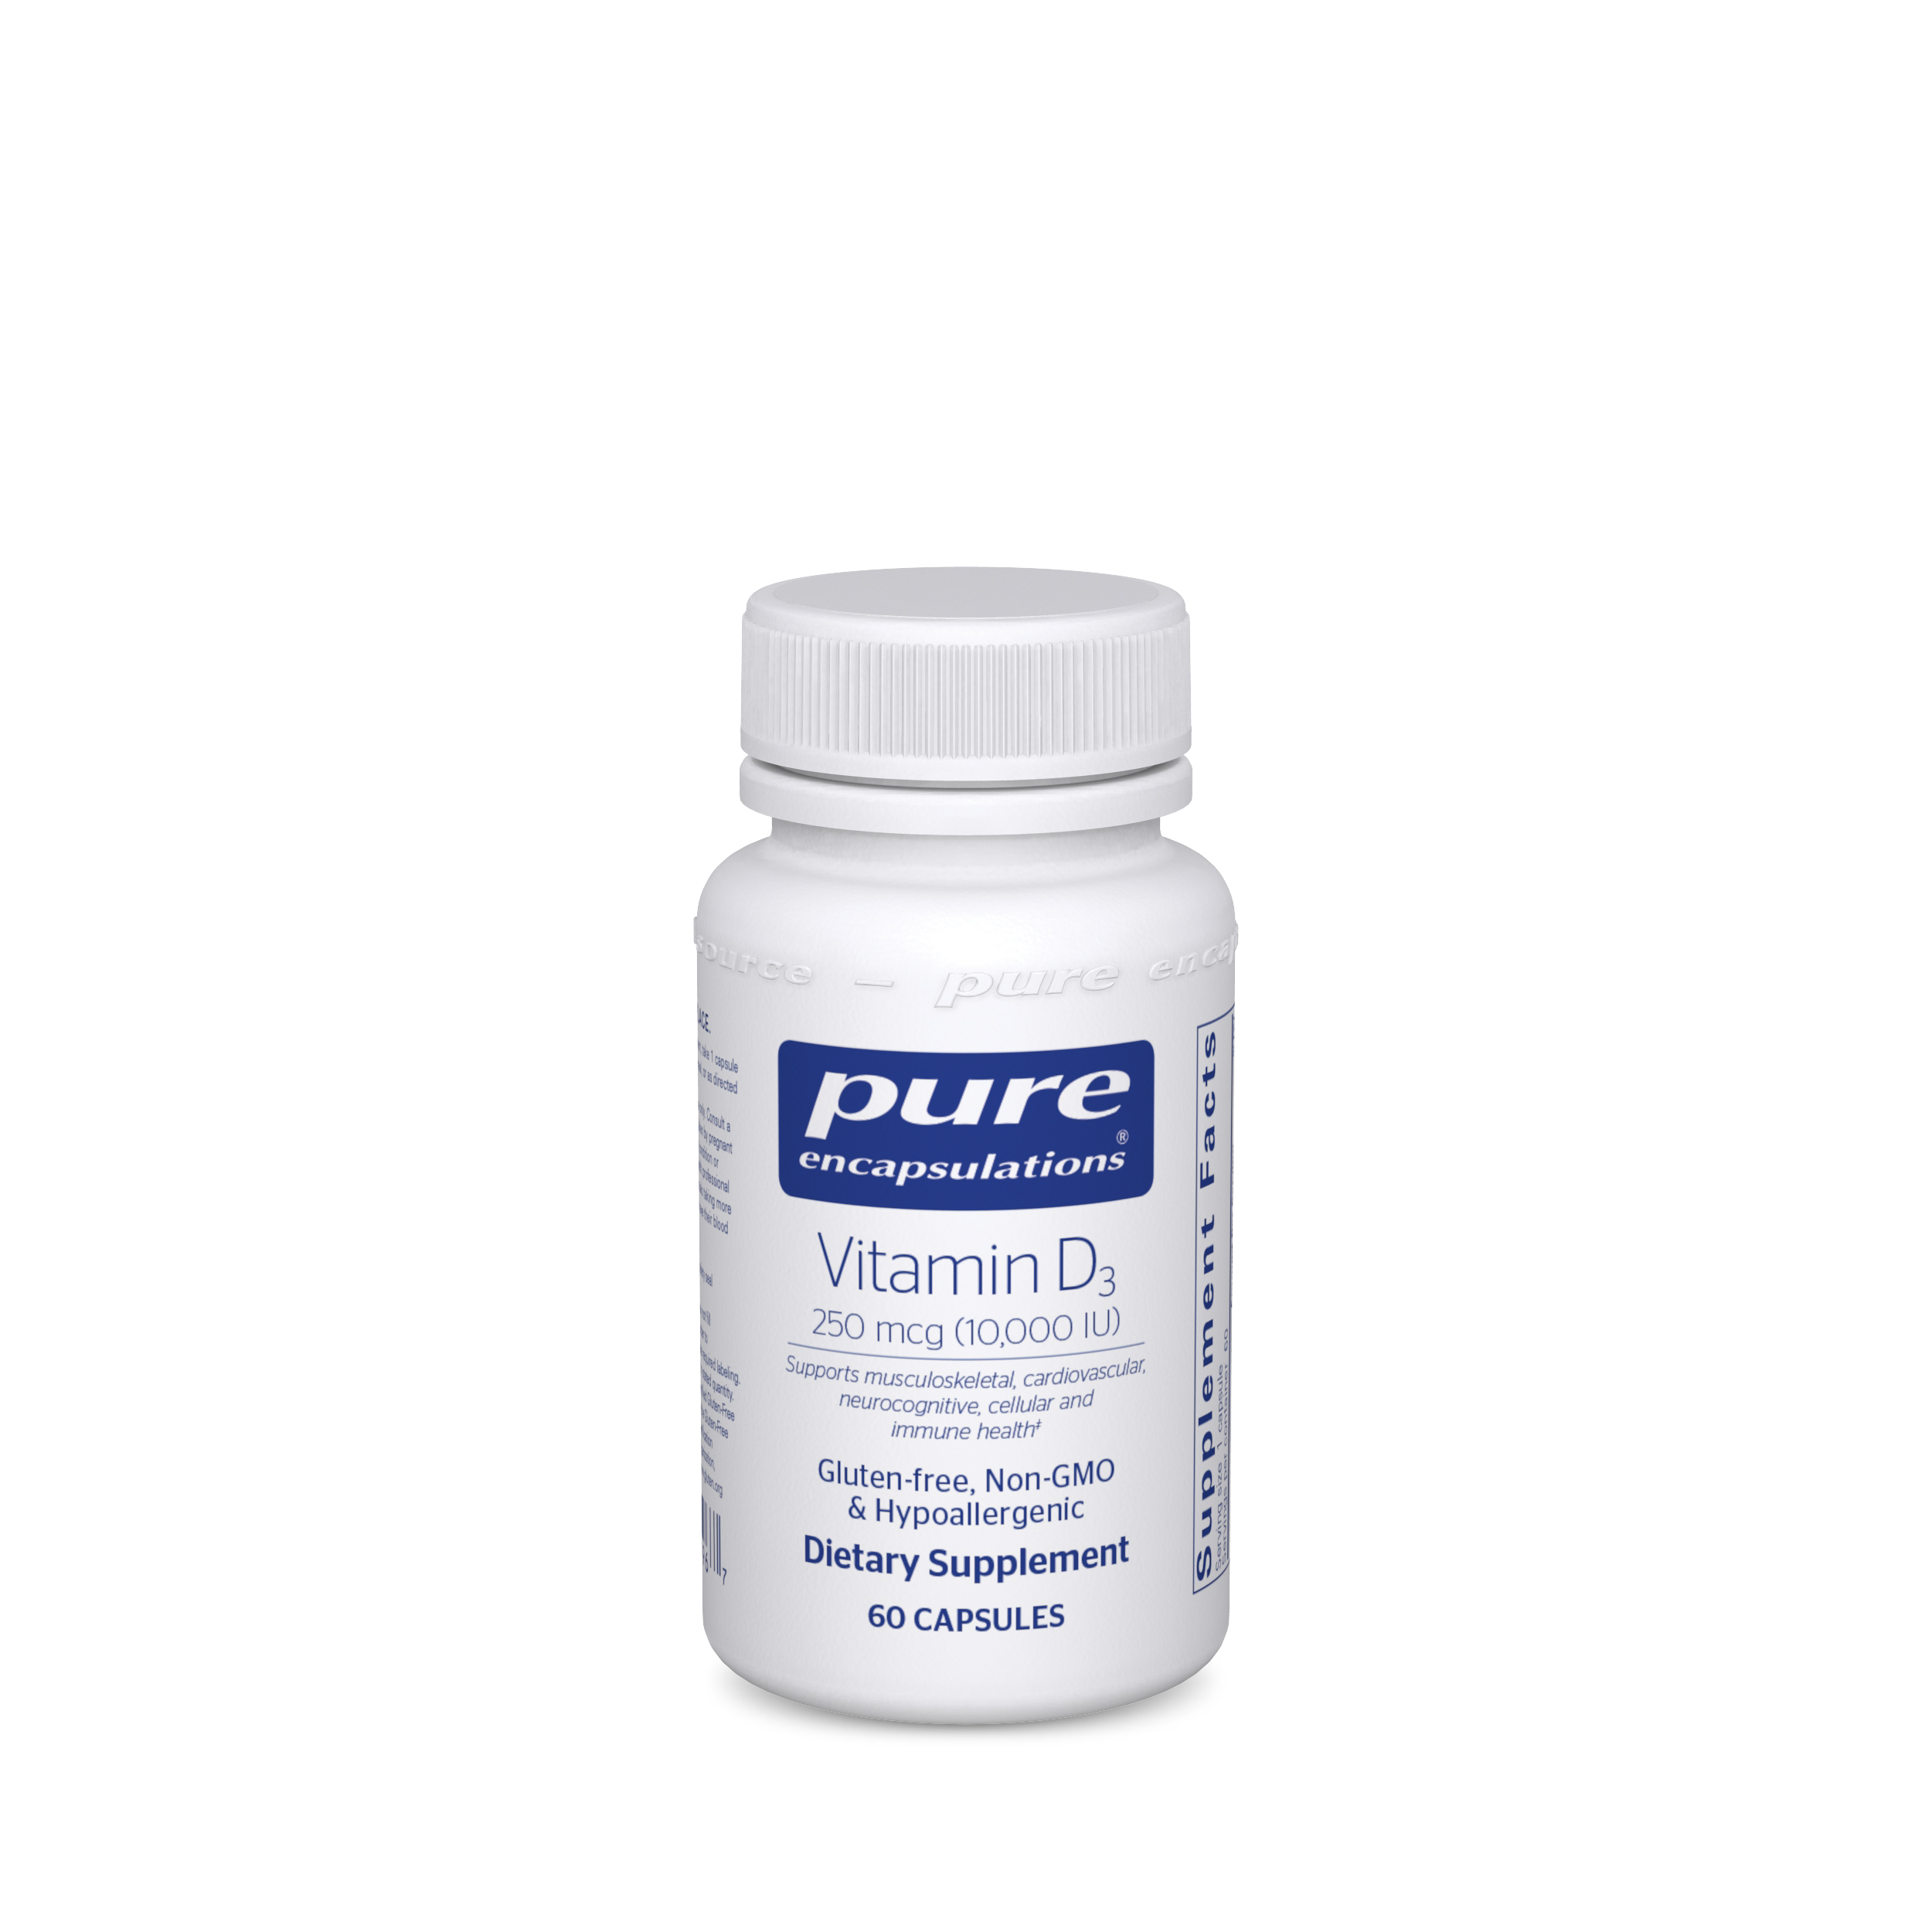 Pure Encapsulations Vitamin D3 250 mcg (10,000 IU) Bottle, 60 capsules